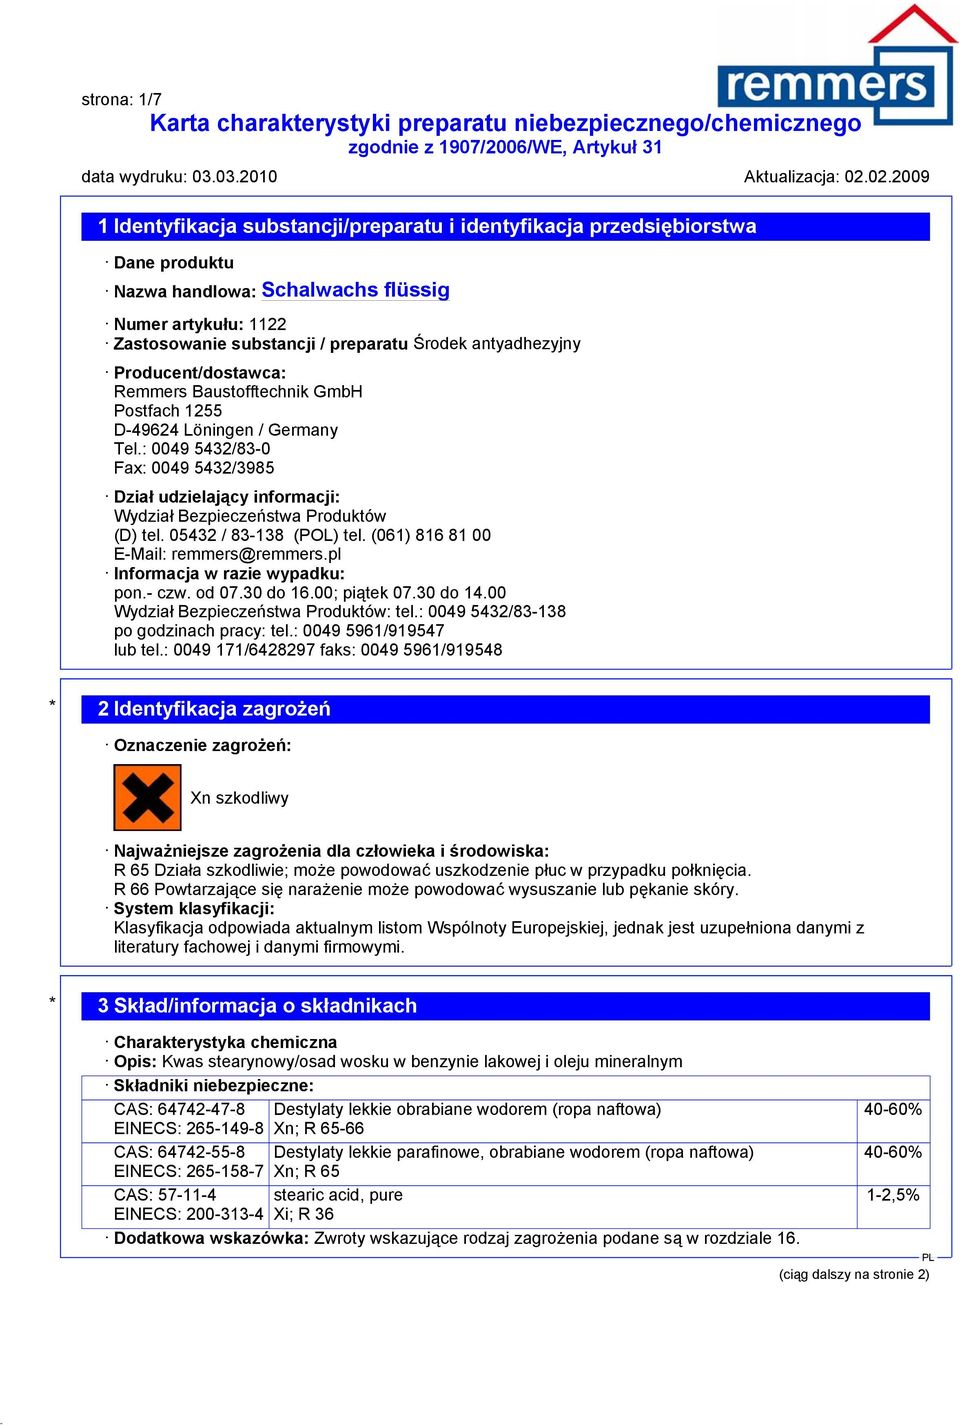 05432 / 83-138 (POL) tel. (061) 816 81 00 E-Mail: remmers@remmers.pl Informacja w razie wypadku: pon.- czw. od 07.30 do 16.00; piątek 07.30 do 14.00 Wydział Bezpieczeństwa Produktów: tel.